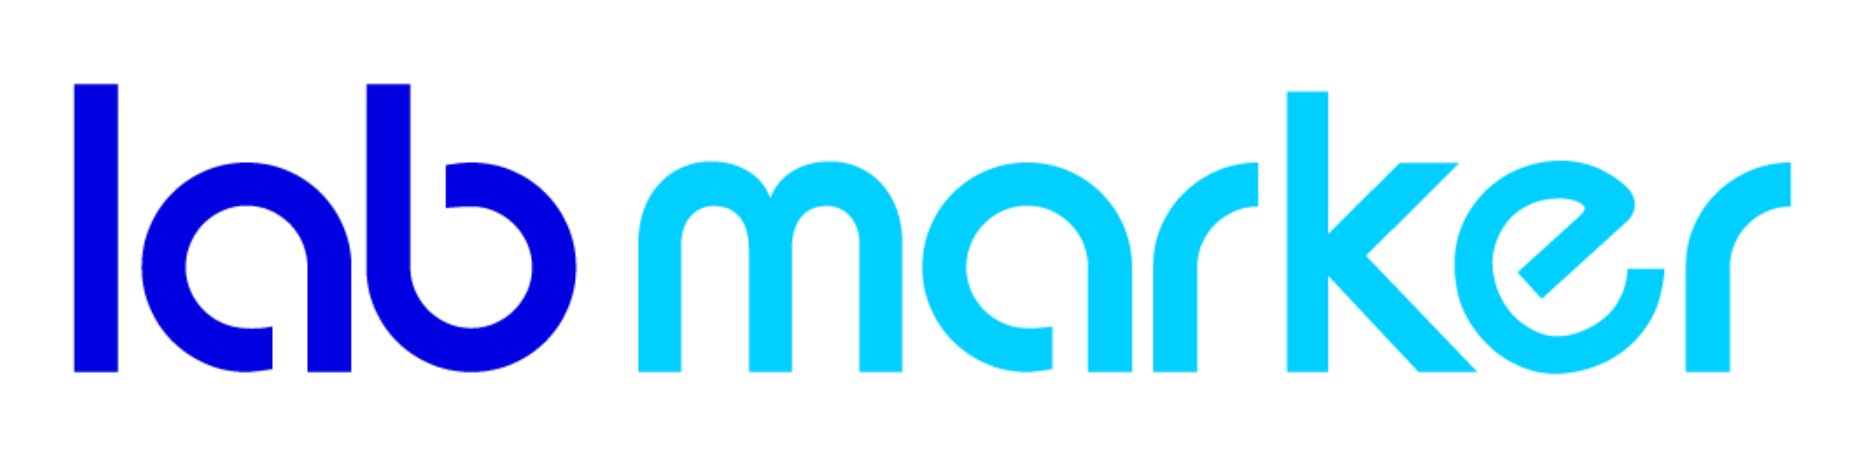 labmarker-logo